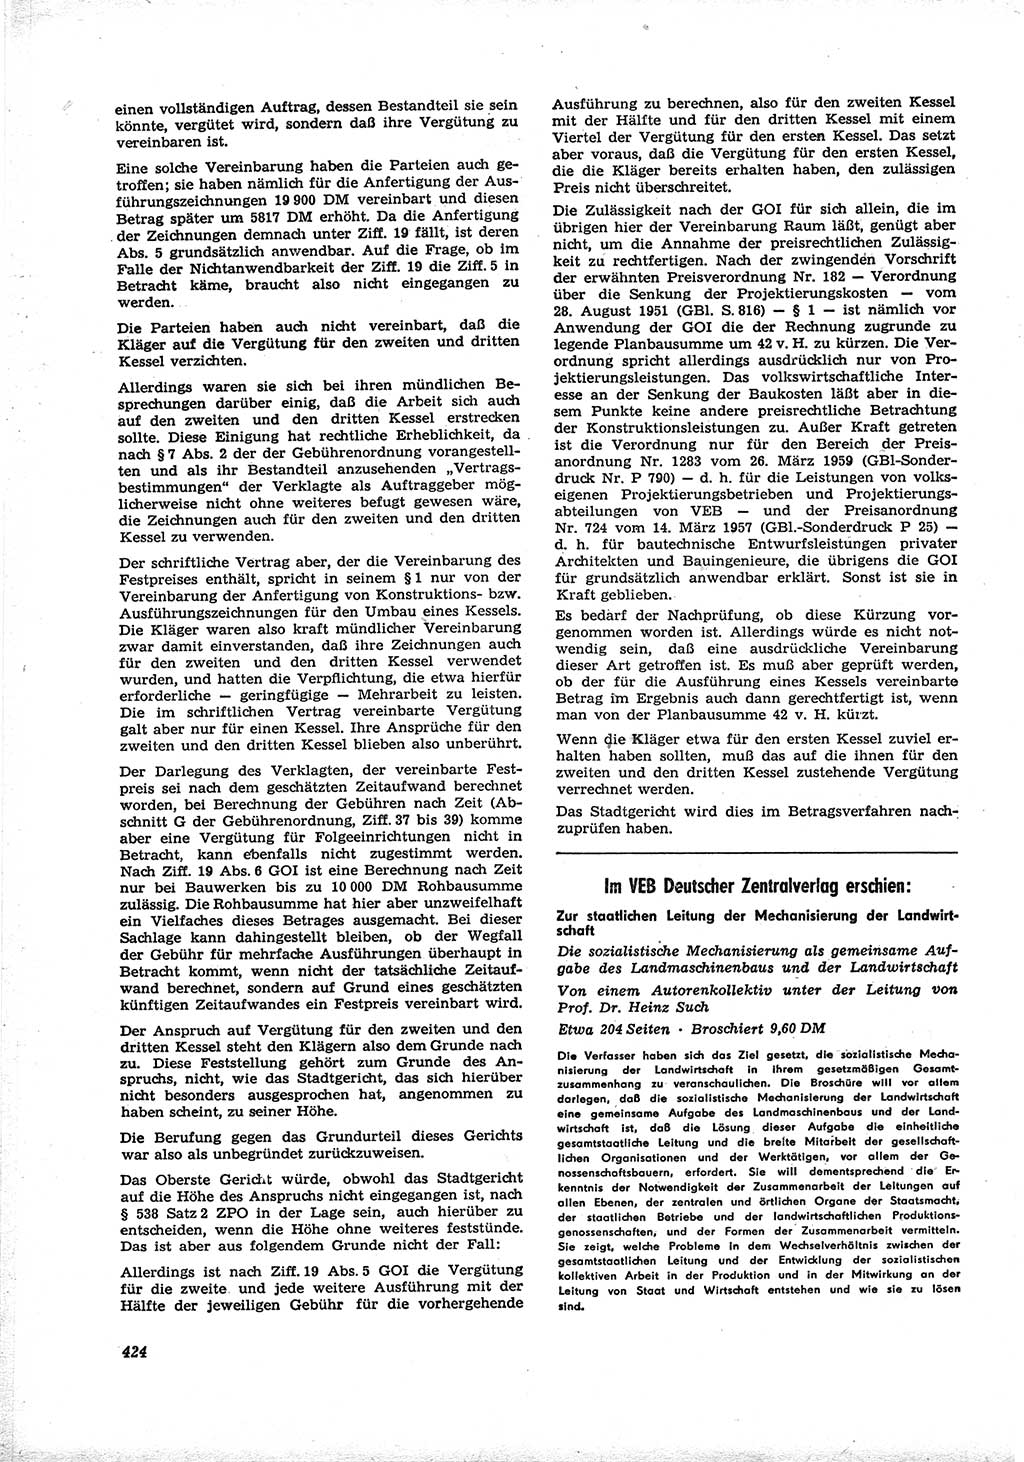 Neue Justiz (NJ), Zeitschrift für Recht und Rechtswissenschaft [Deutsche Demokratische Republik (DDR)], 16. Jahrgang 1962, Seite 424 (NJ DDR 1962, S. 424)